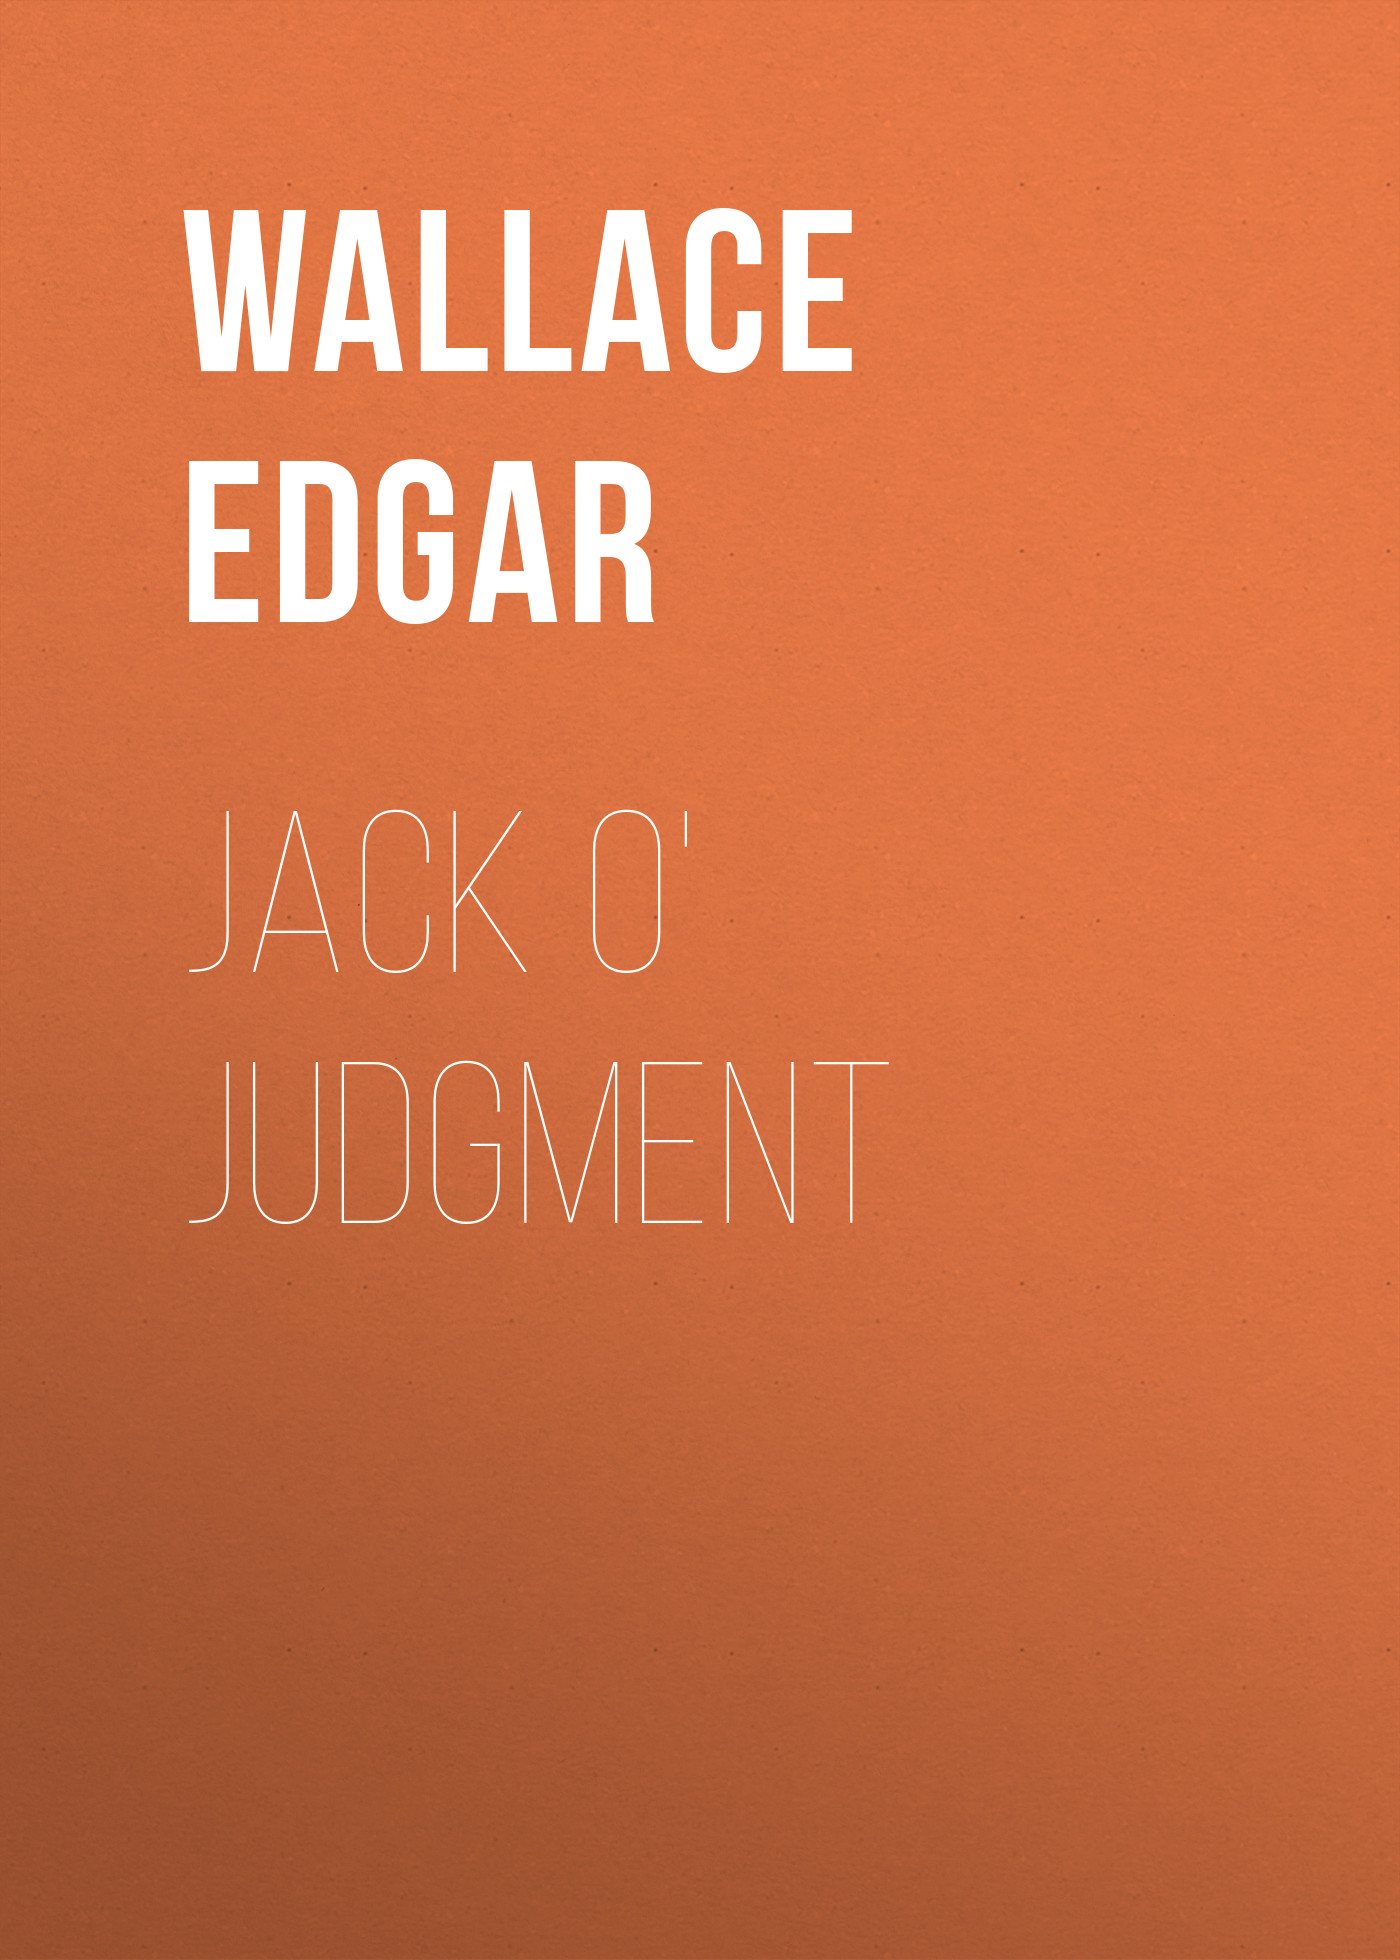 Книга Jack O' Judgment из серии , созданная Edgar Wallace, может относится к жанру Зарубежная классика, Классические детективы, Зарубежные детективы, Зарубежная старинная литература. Стоимость электронной книги Jack O' Judgment с идентификатором 36095173 составляет 0 руб.